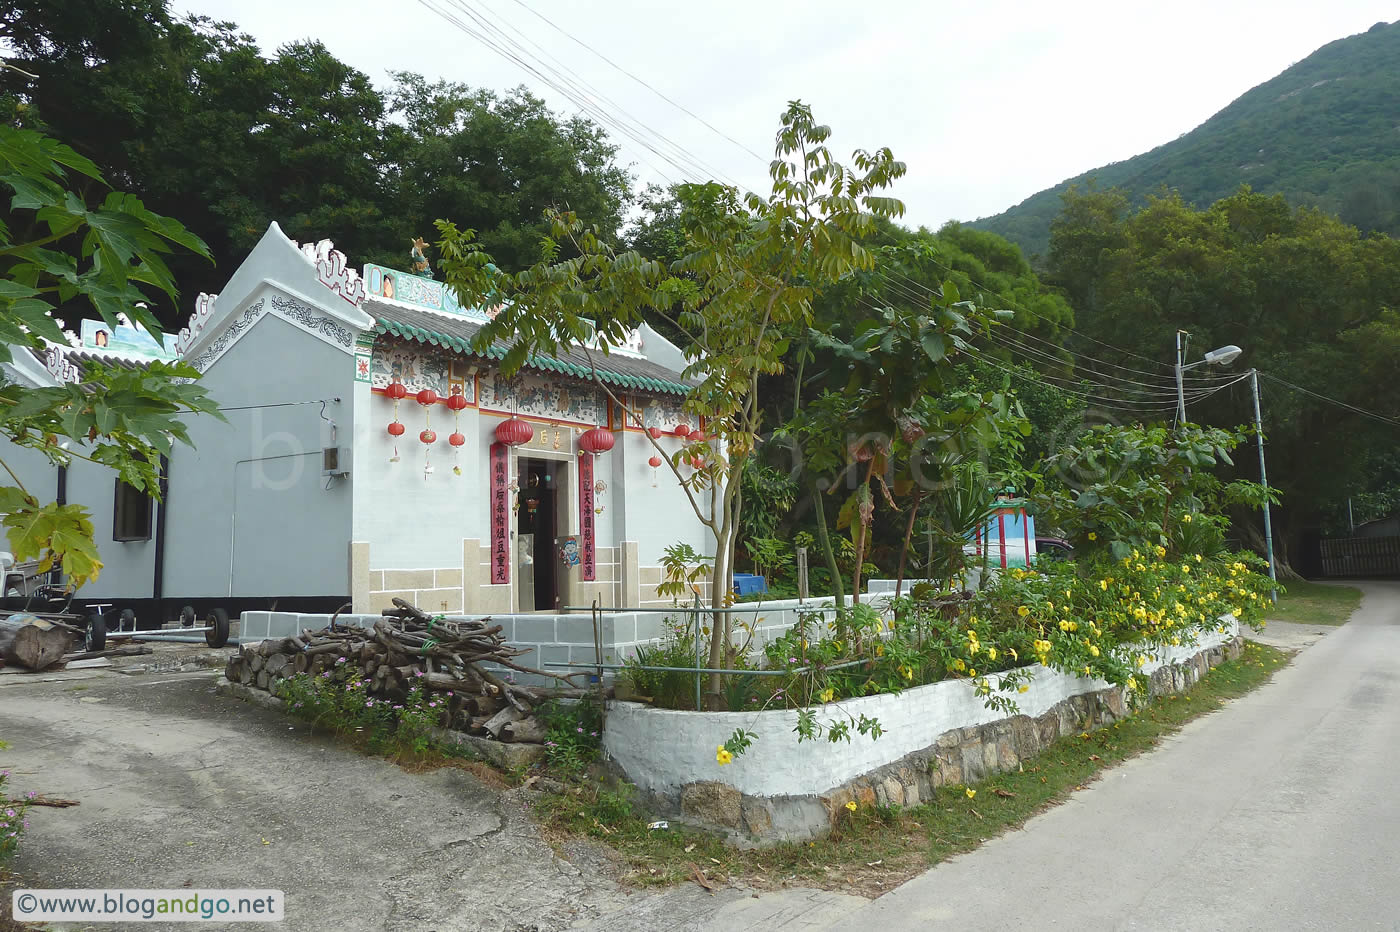 Lantau Trail 12 - Pui O Tin Hau Temple